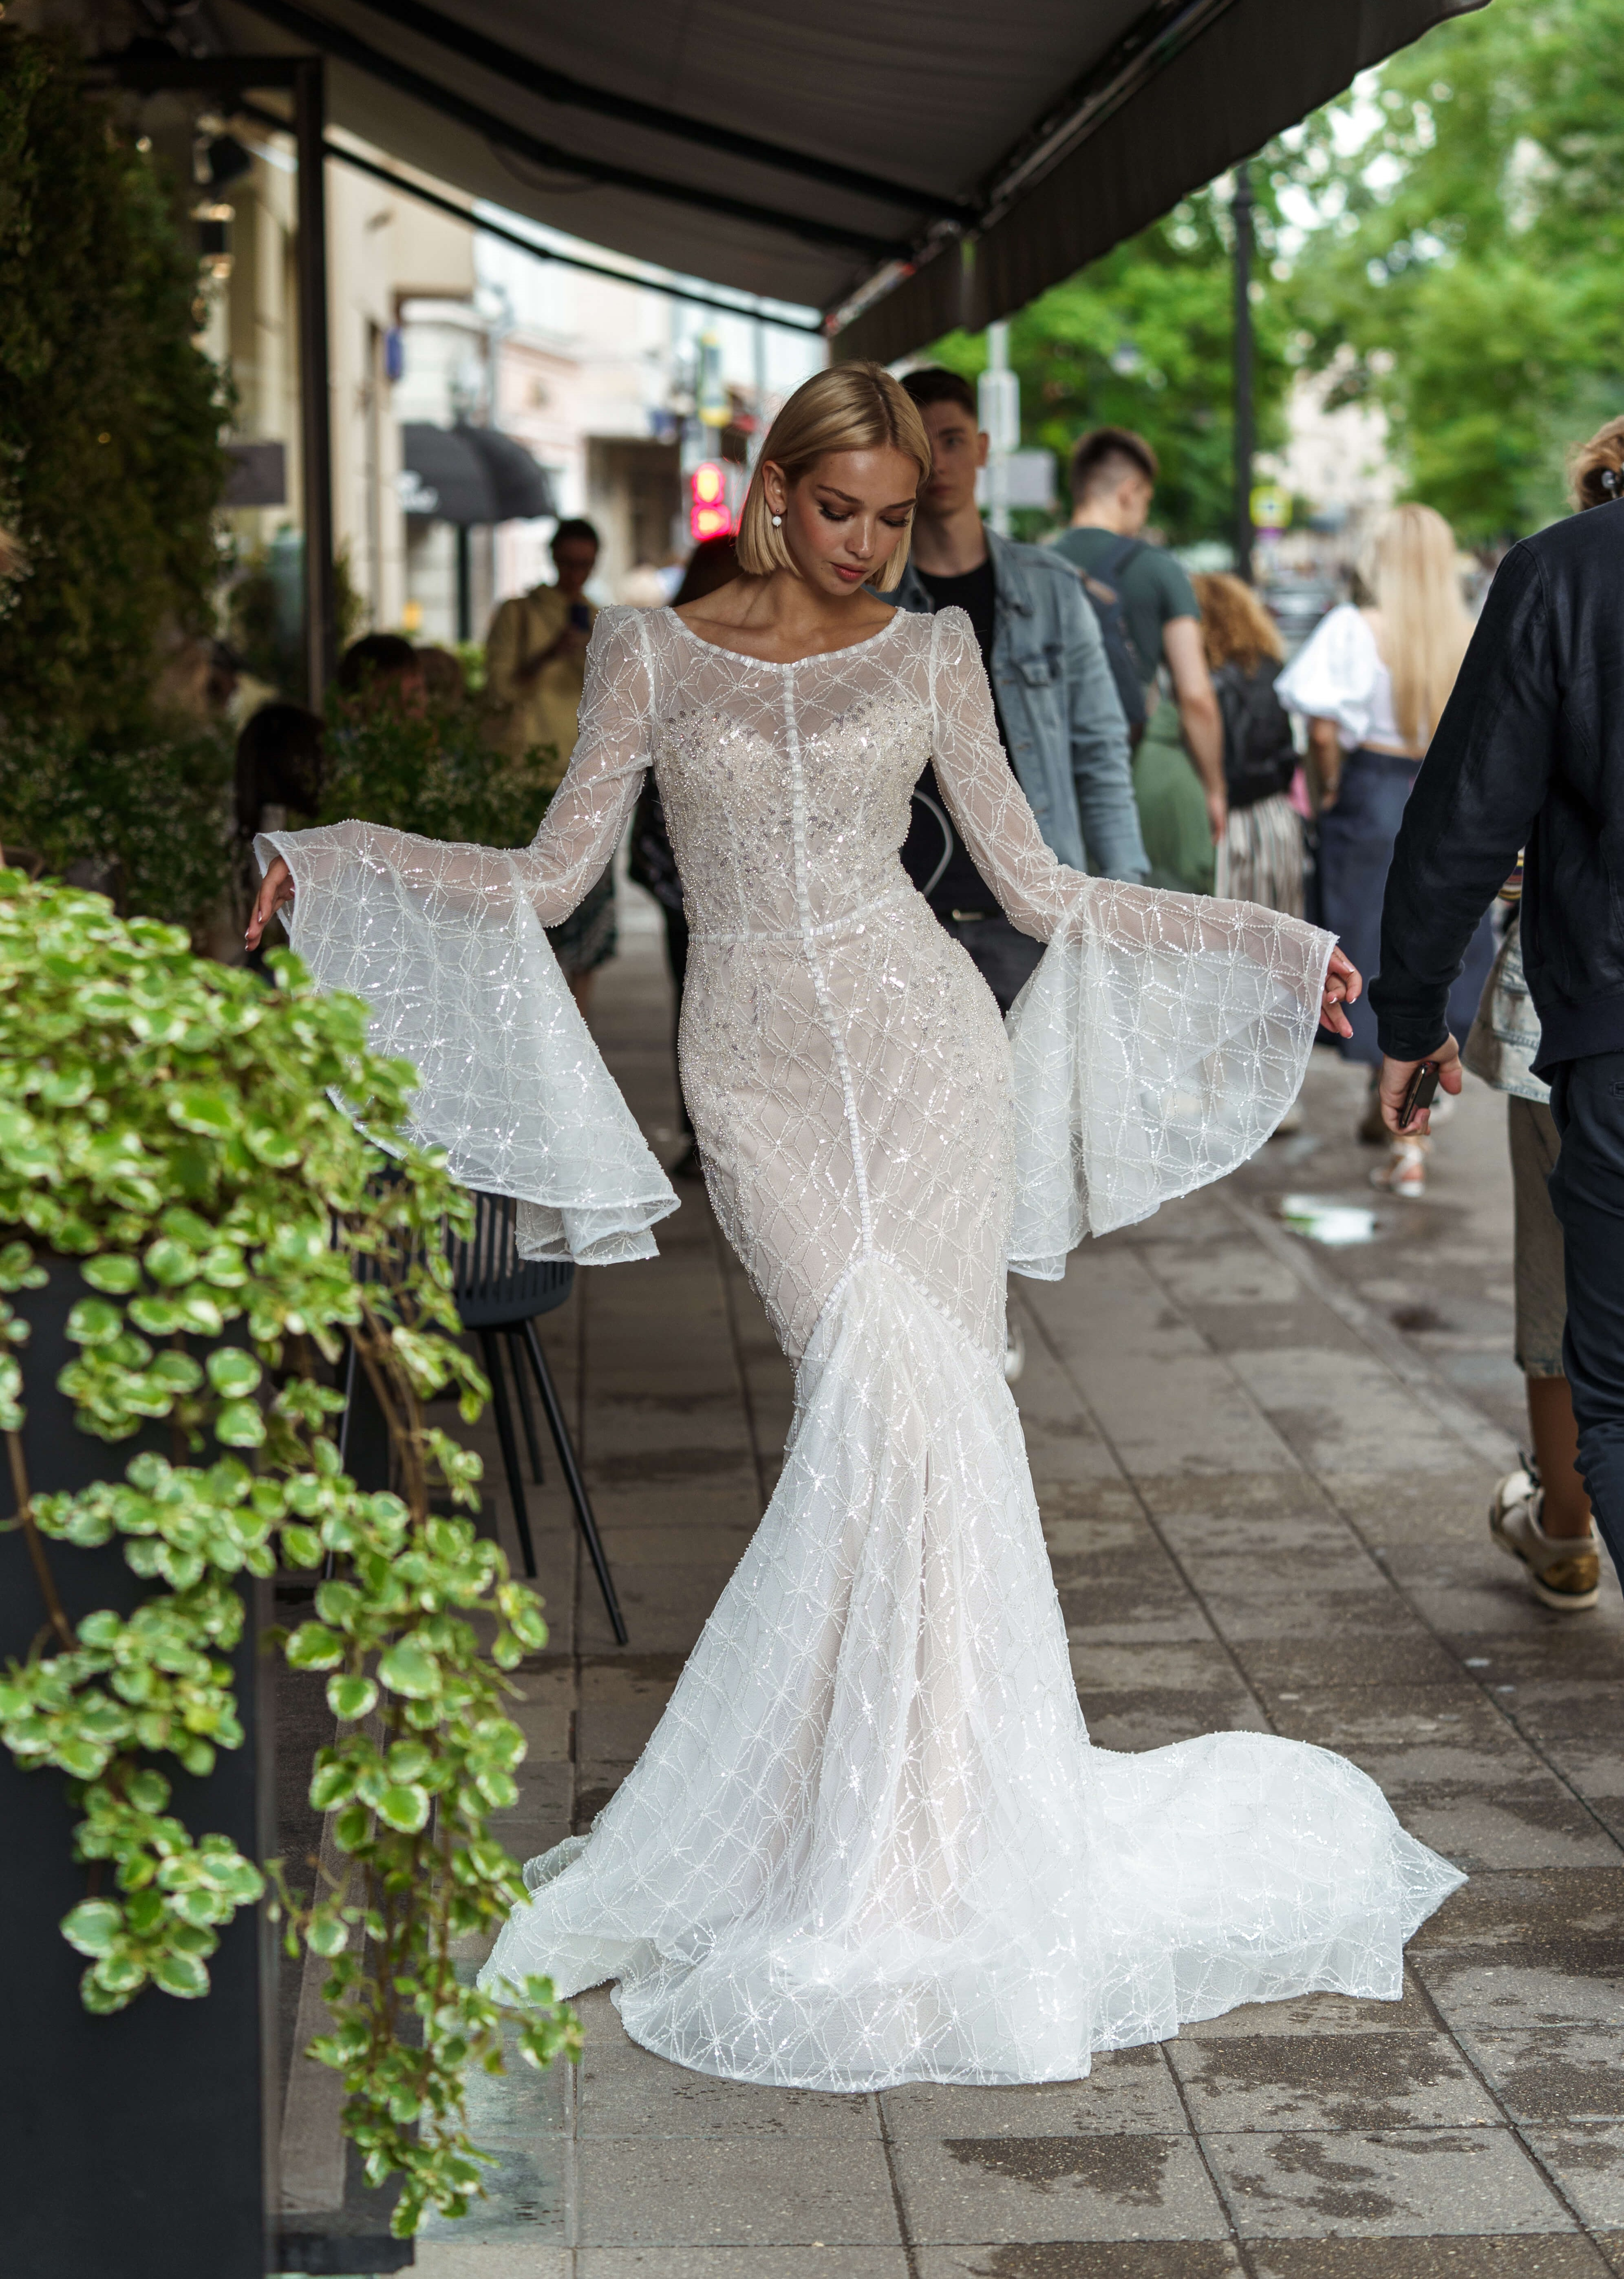 Купить свадебное платье «Маргейт» Рара Авис из коллекции О Май Брайд 2021 года в интернет-магазине